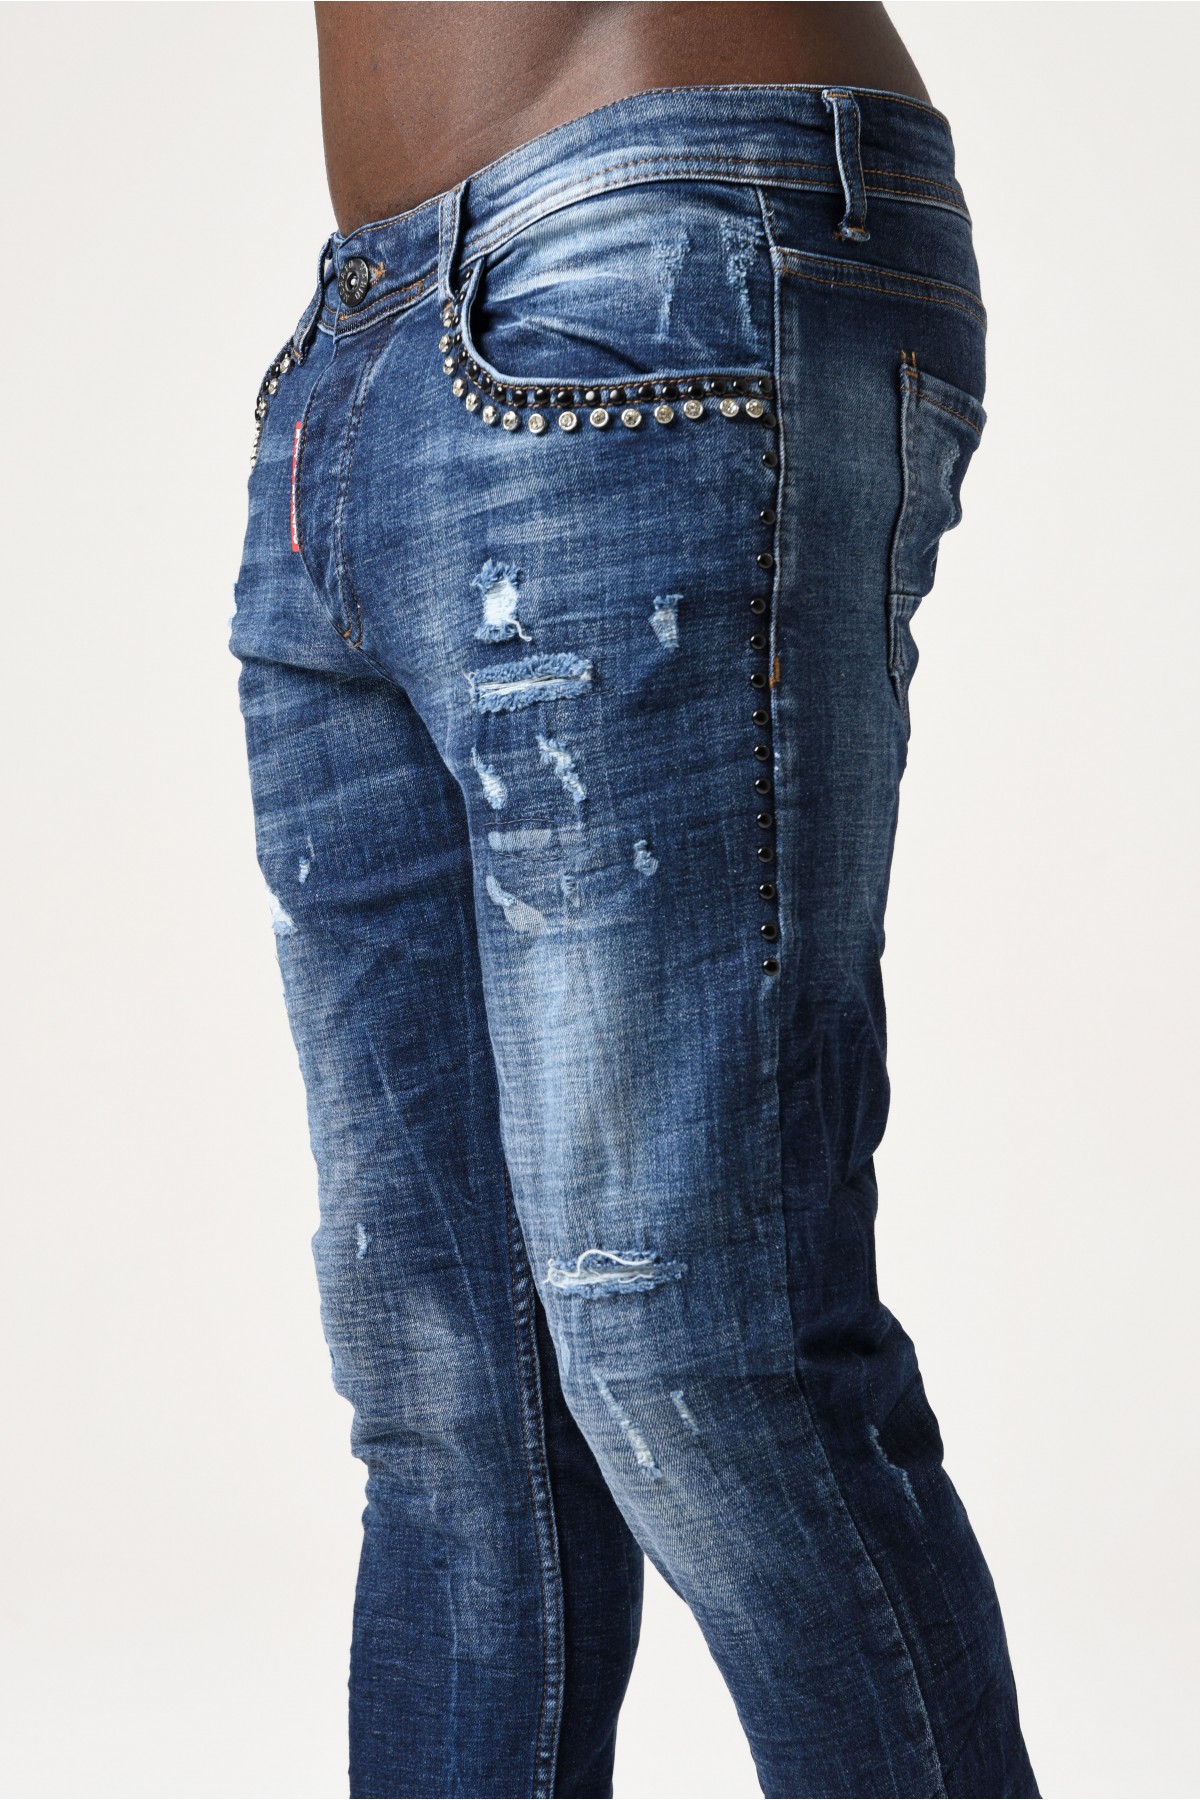 Erkek Denim Pantolon - Arka tarafta kırmızı etiket ve cepte Siyah Beyaz taş detay - Koyu Mavi